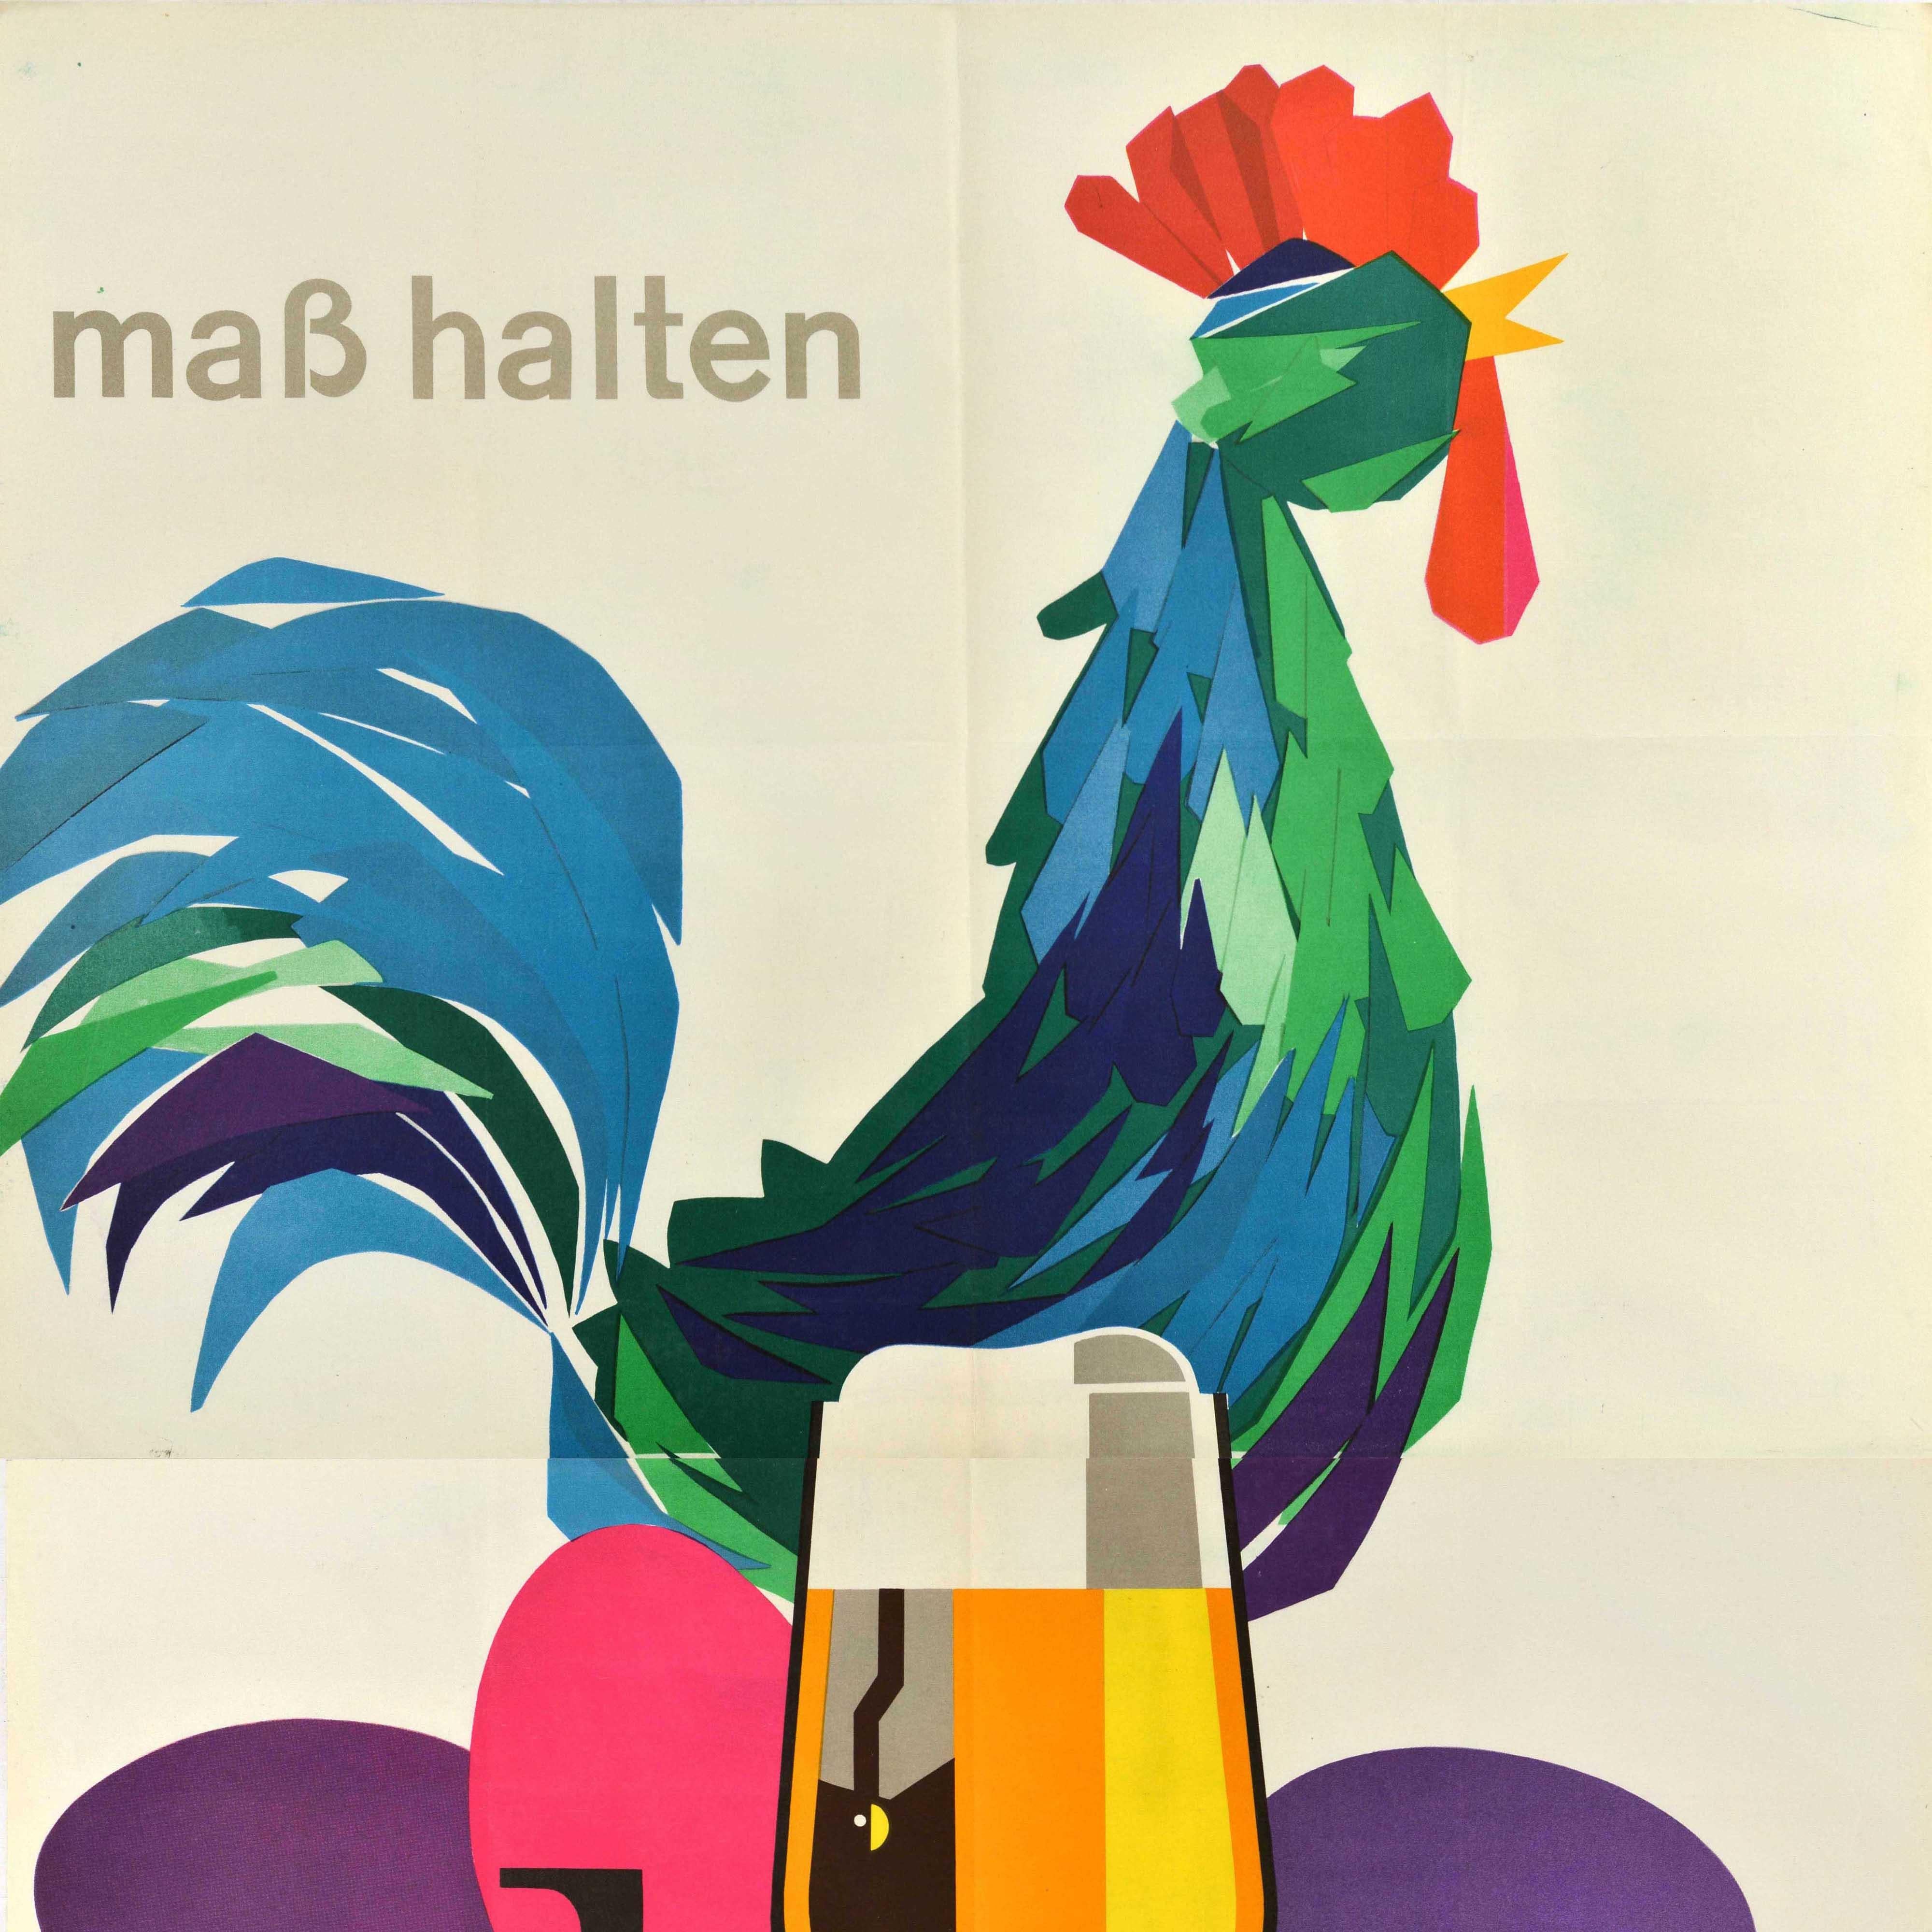 Affiche publicitaire vintage originale - Mass halten bier trinken / Drink beer moderately - présentant une illustration amusante d'un coq chantant à côté d'œufs de poule colorés avec, au premier plan, un verre de bière dans le cadre du i in bier.